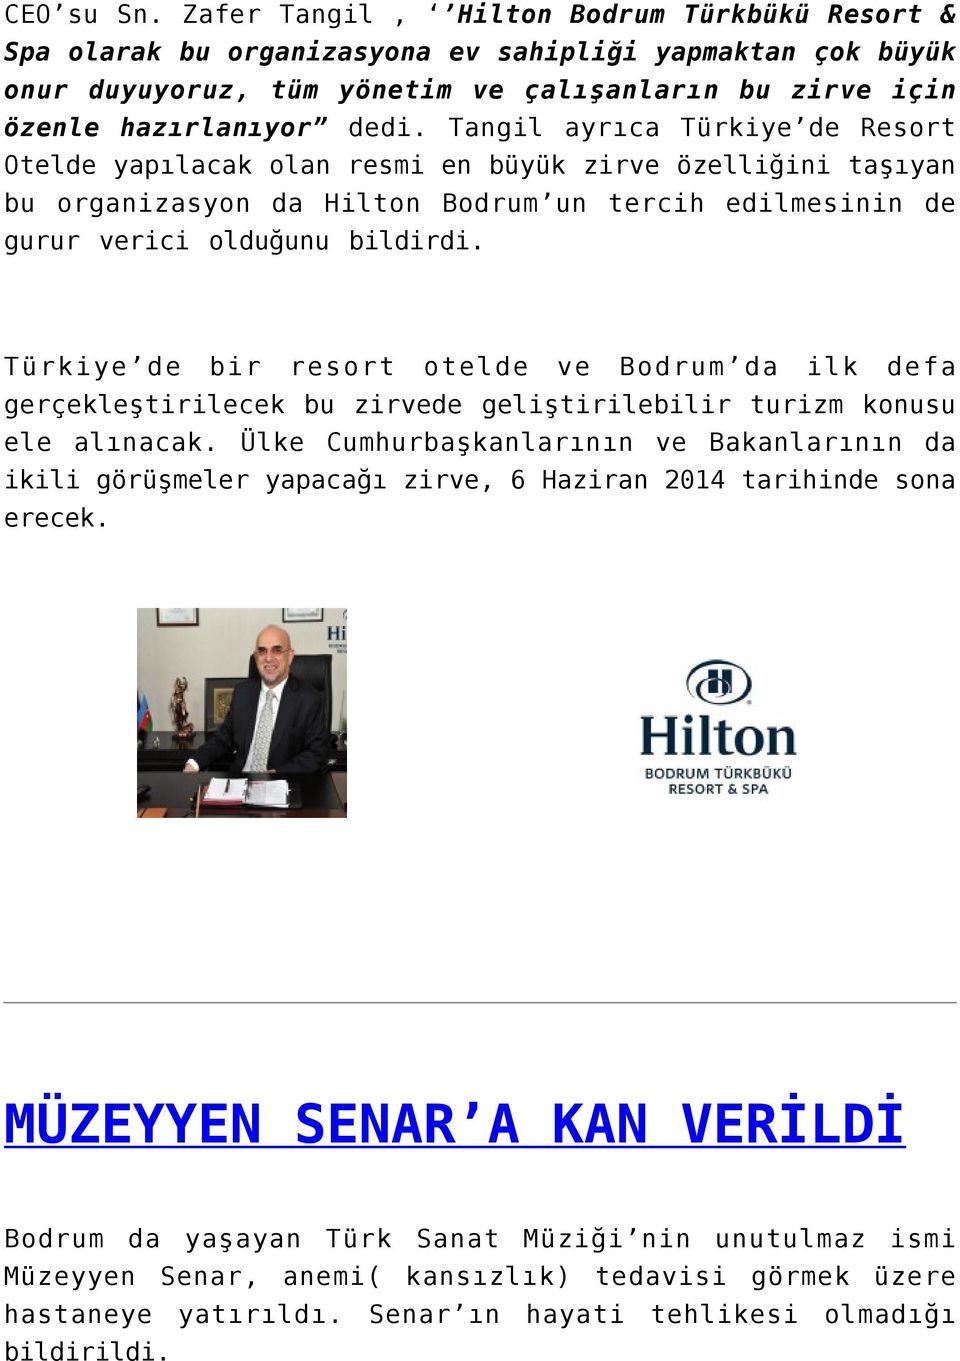 Tangil ayrıca Türkiye de Resort Otelde yapılacak olan resmi en büyük zirve özelliğini taşıyan bu organizasyon da Hilton Bodrum un tercih edilmesinin de gurur verici olduğunu bildirdi.